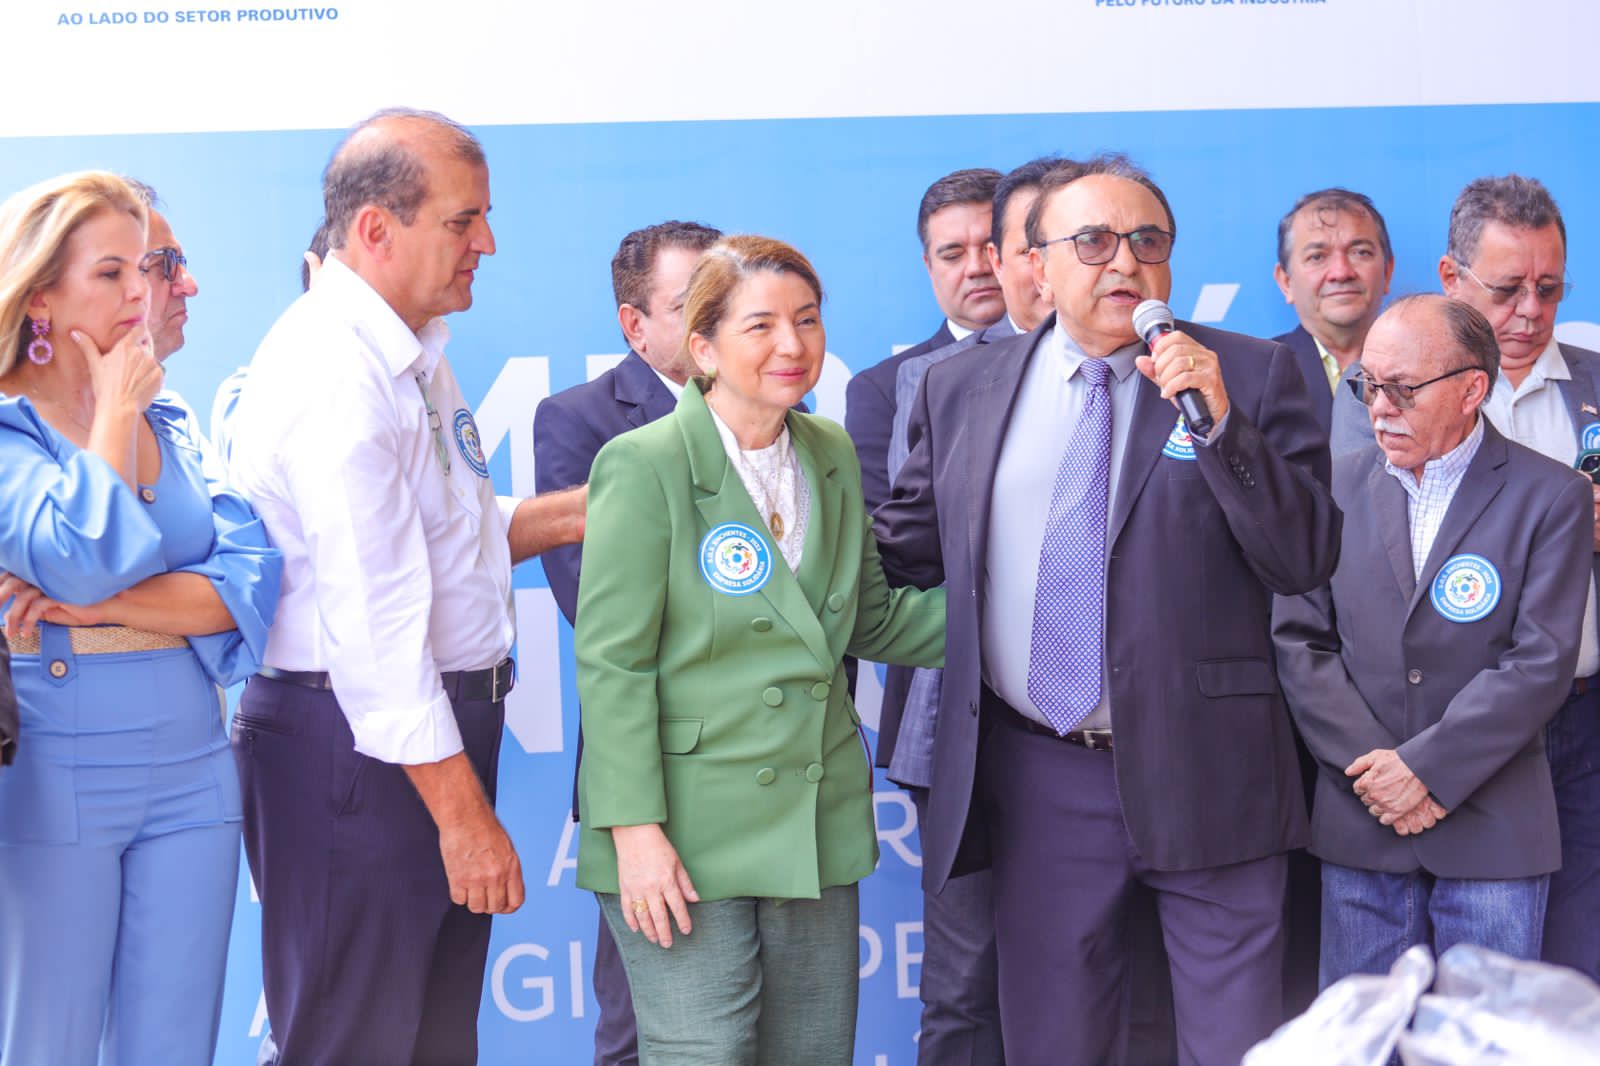 Representando o governador Carlos Brandão (PSB), o secretário-chefe da Casa Civil, Sebastião Madeira, agradeceu a classe empresarial